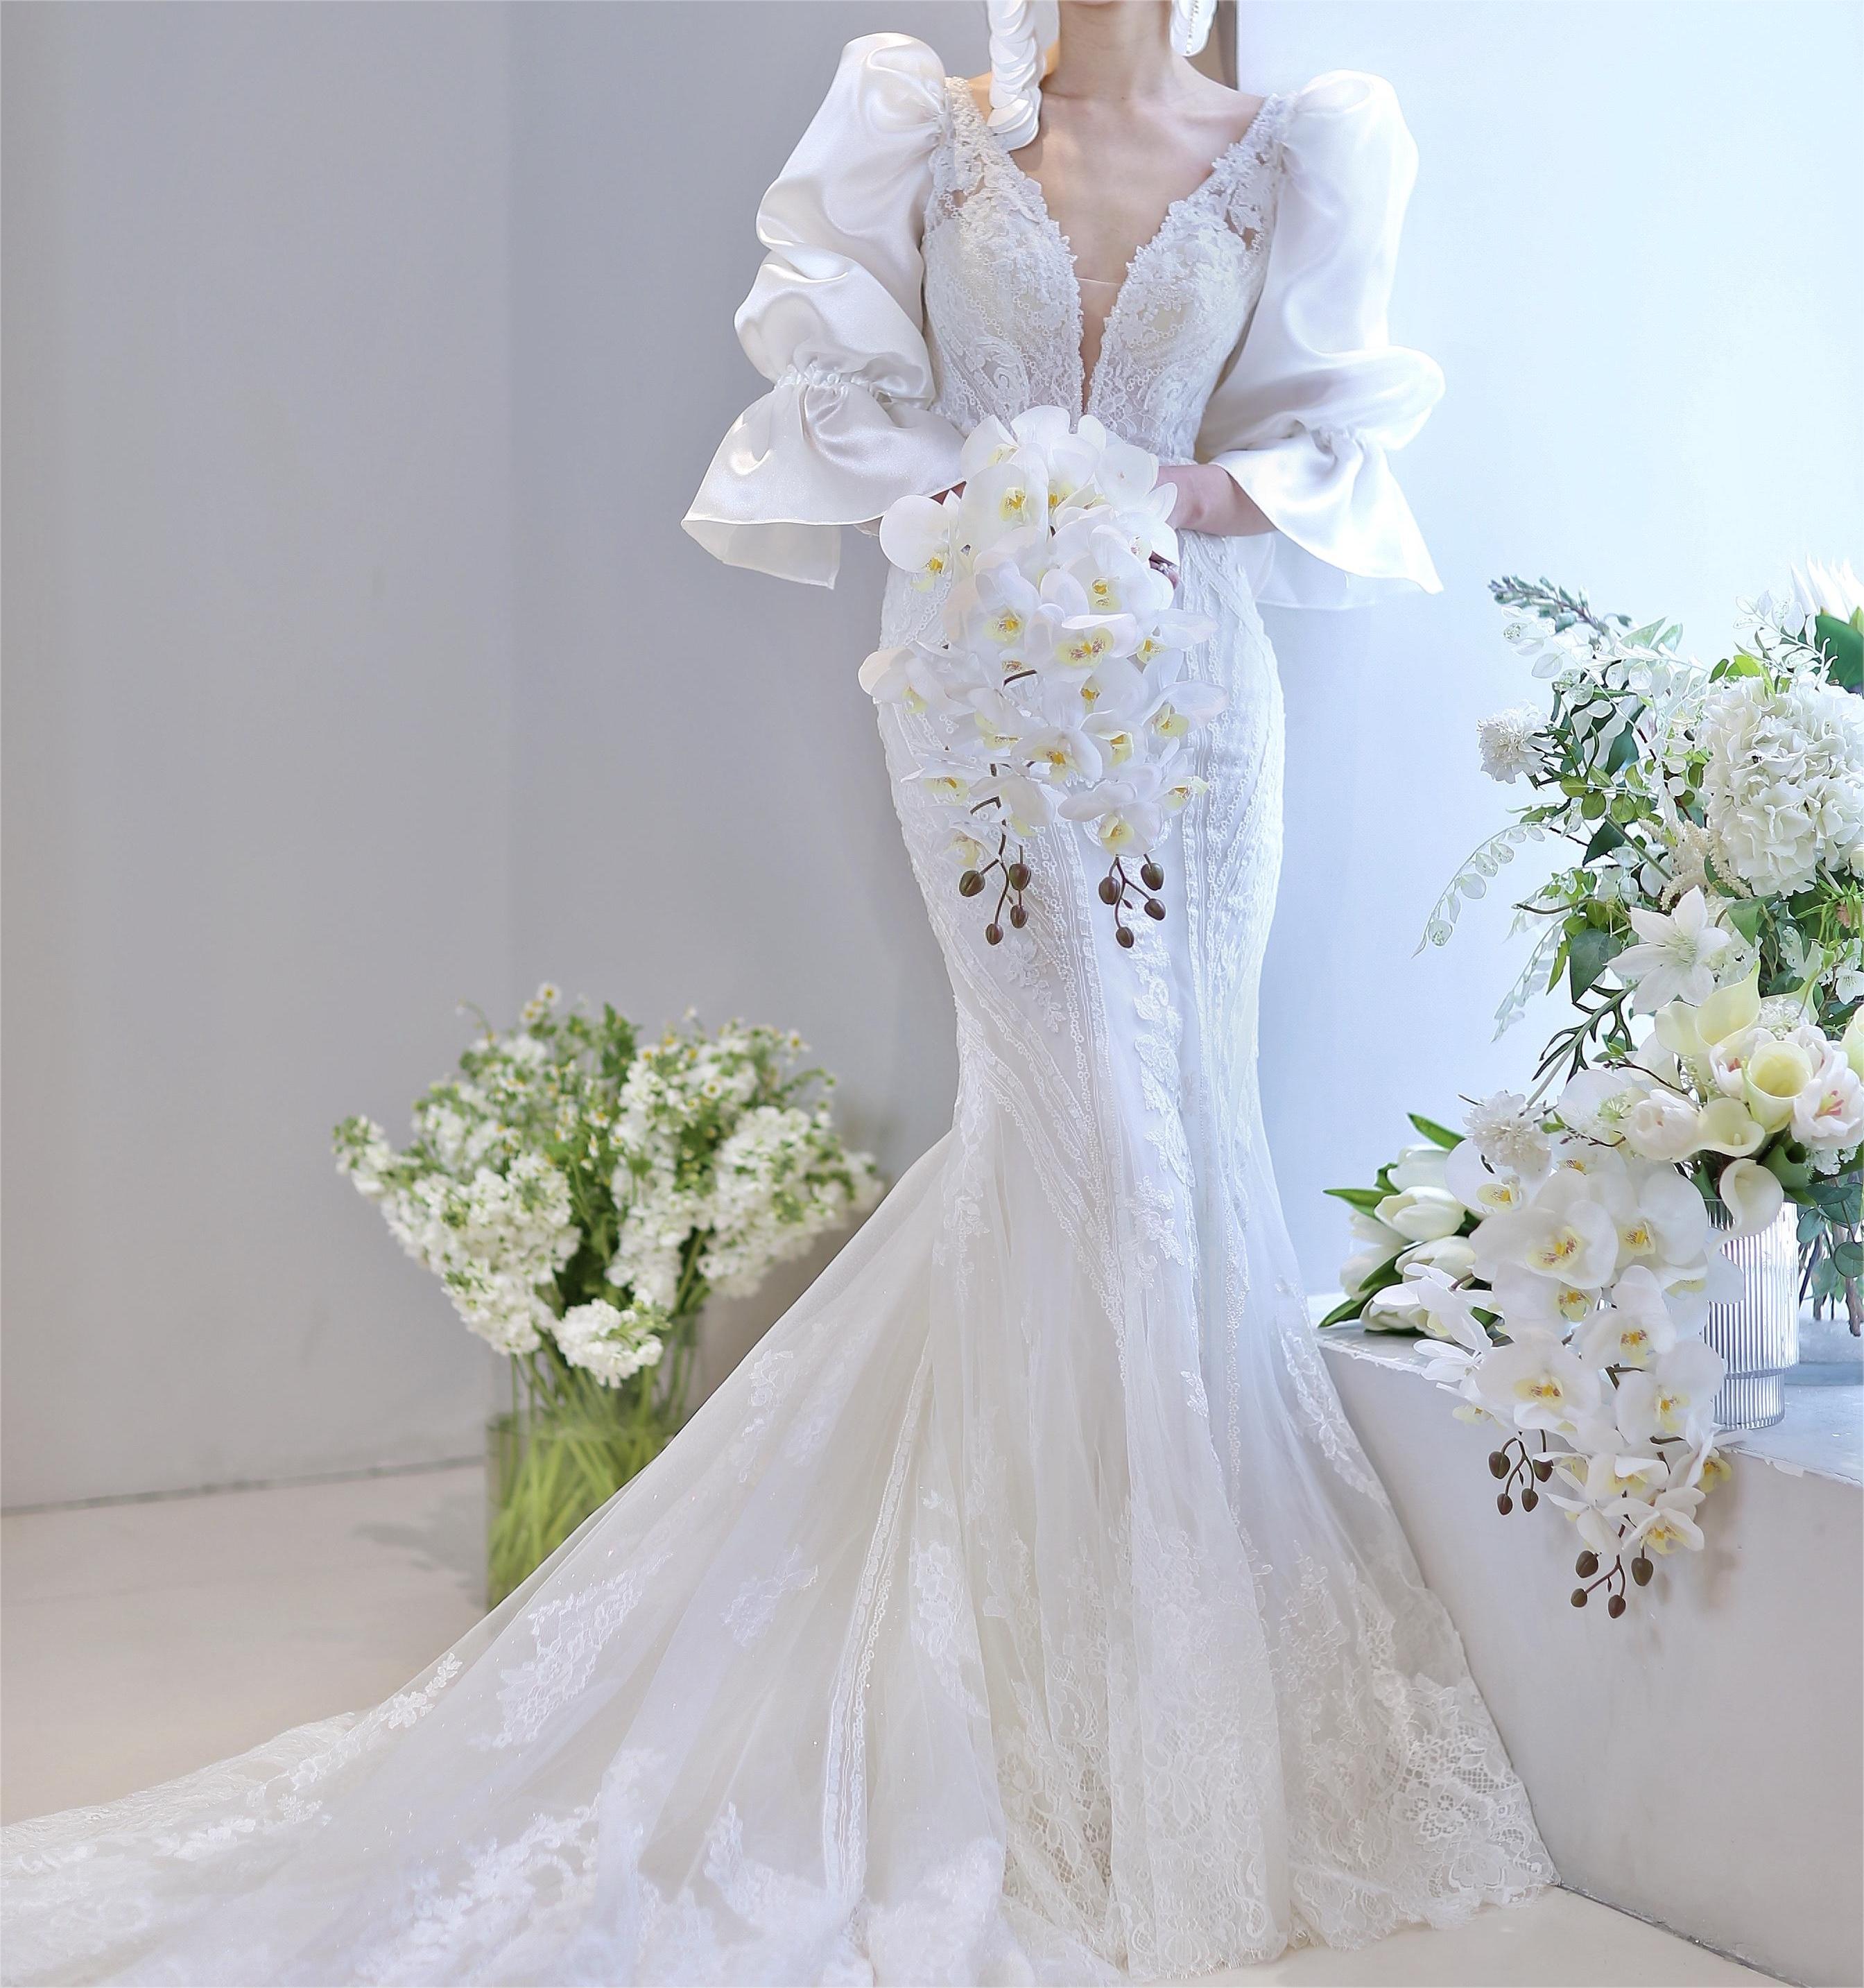 气质优雅的美女新娘白色鱼尾裙婚纱高清桌面壁纸图片 | 犀牛图片网